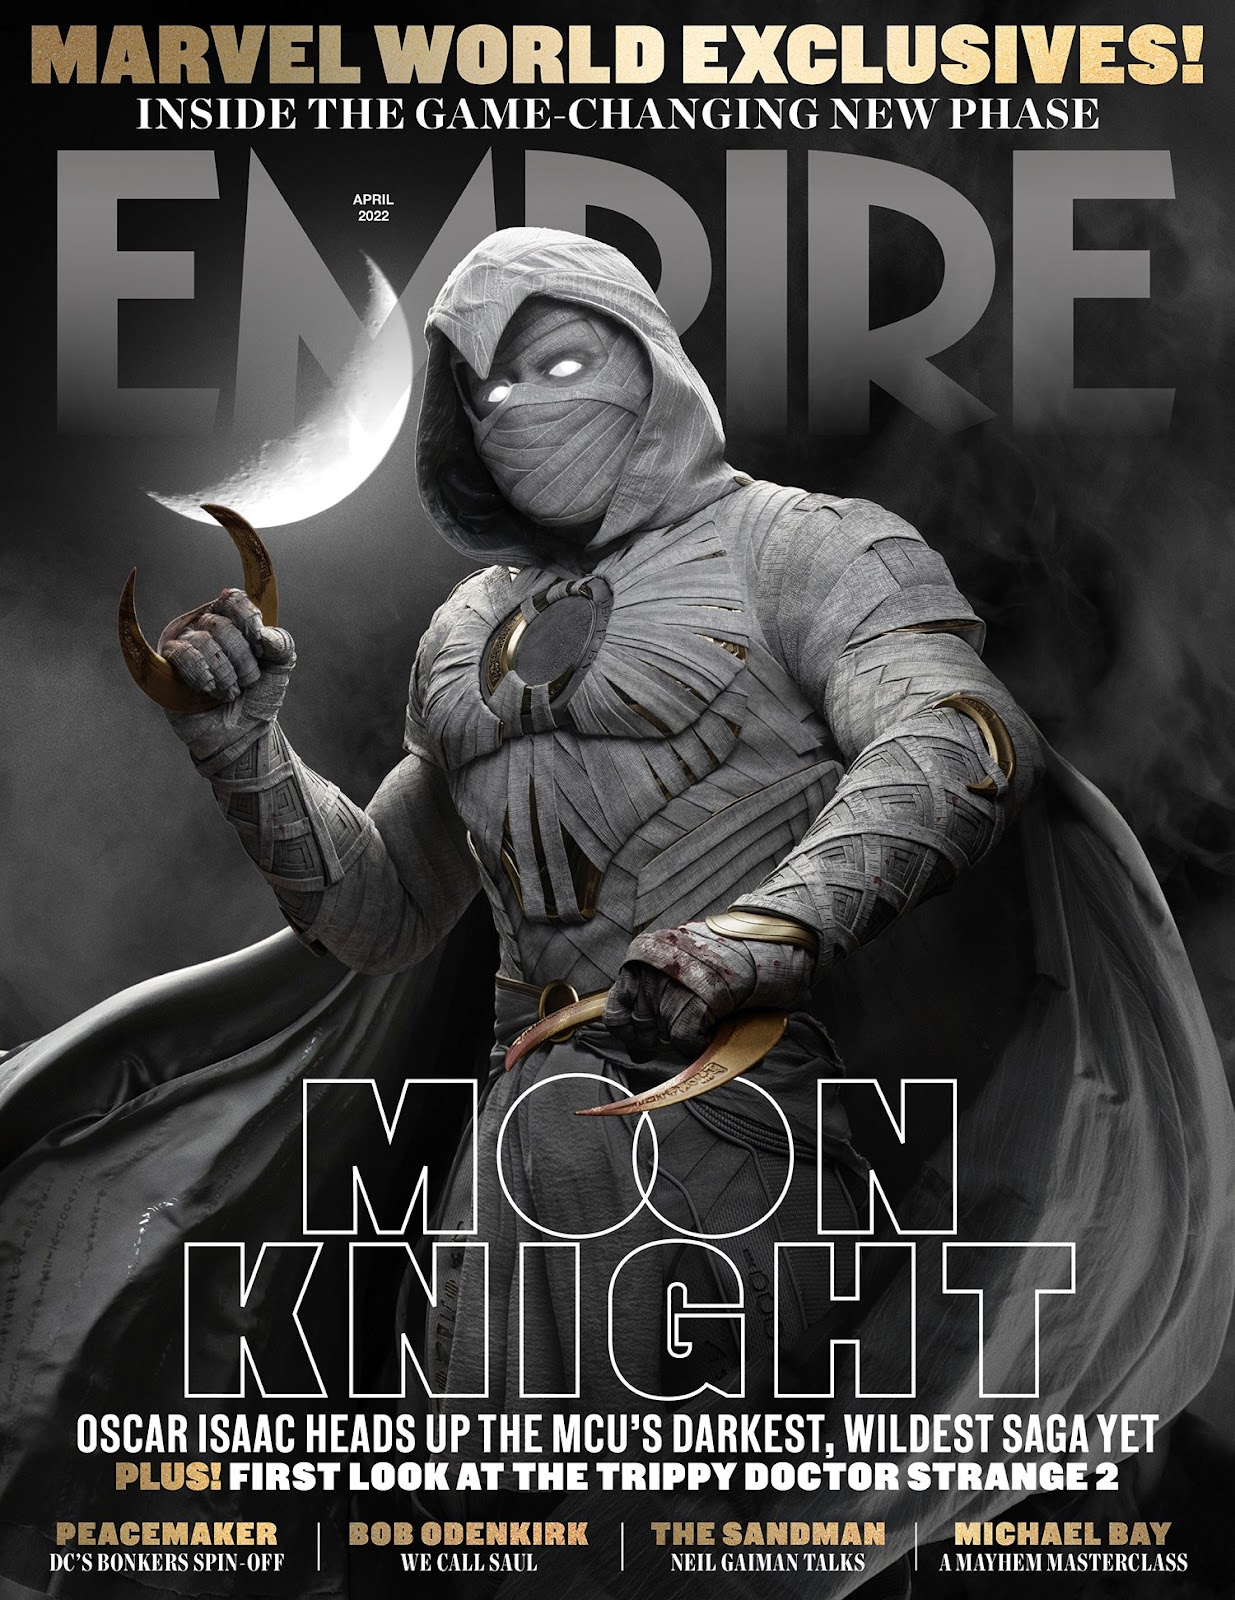 Universo Marvel 616: Primeira imagem de Ethan Hawke em Cavaleiro da Lua